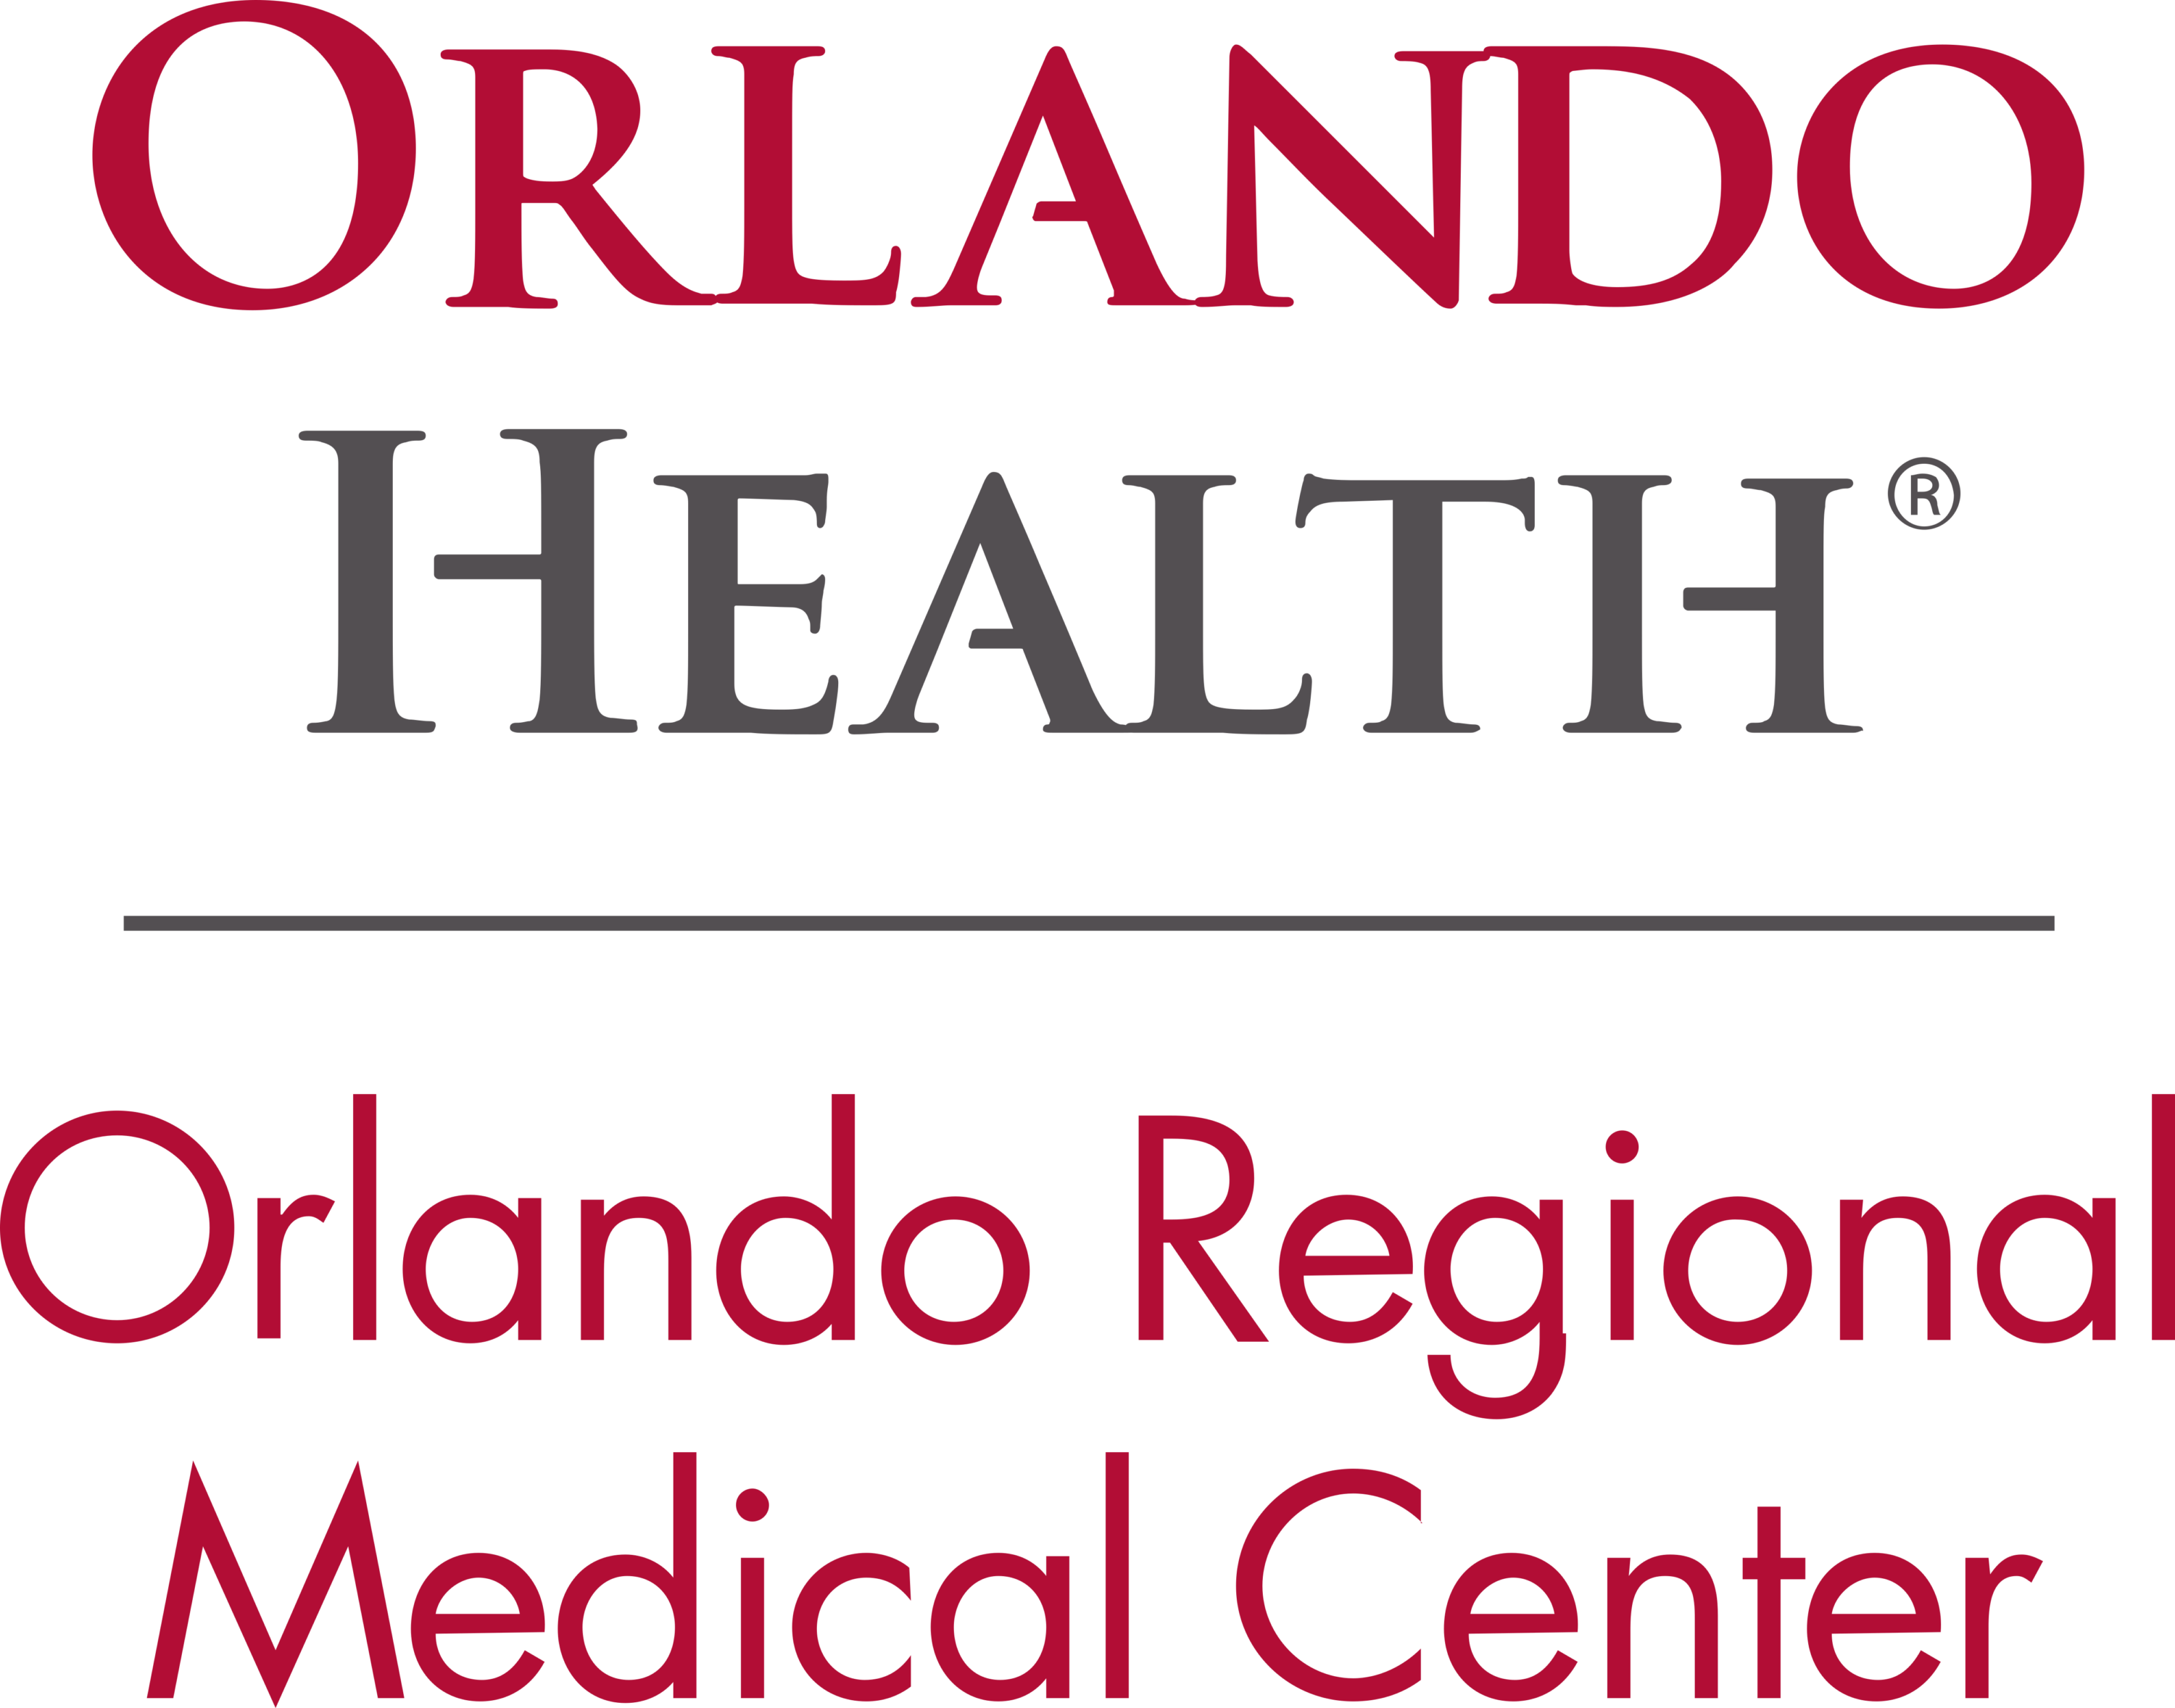 Orlando Regional Medical Center Logo